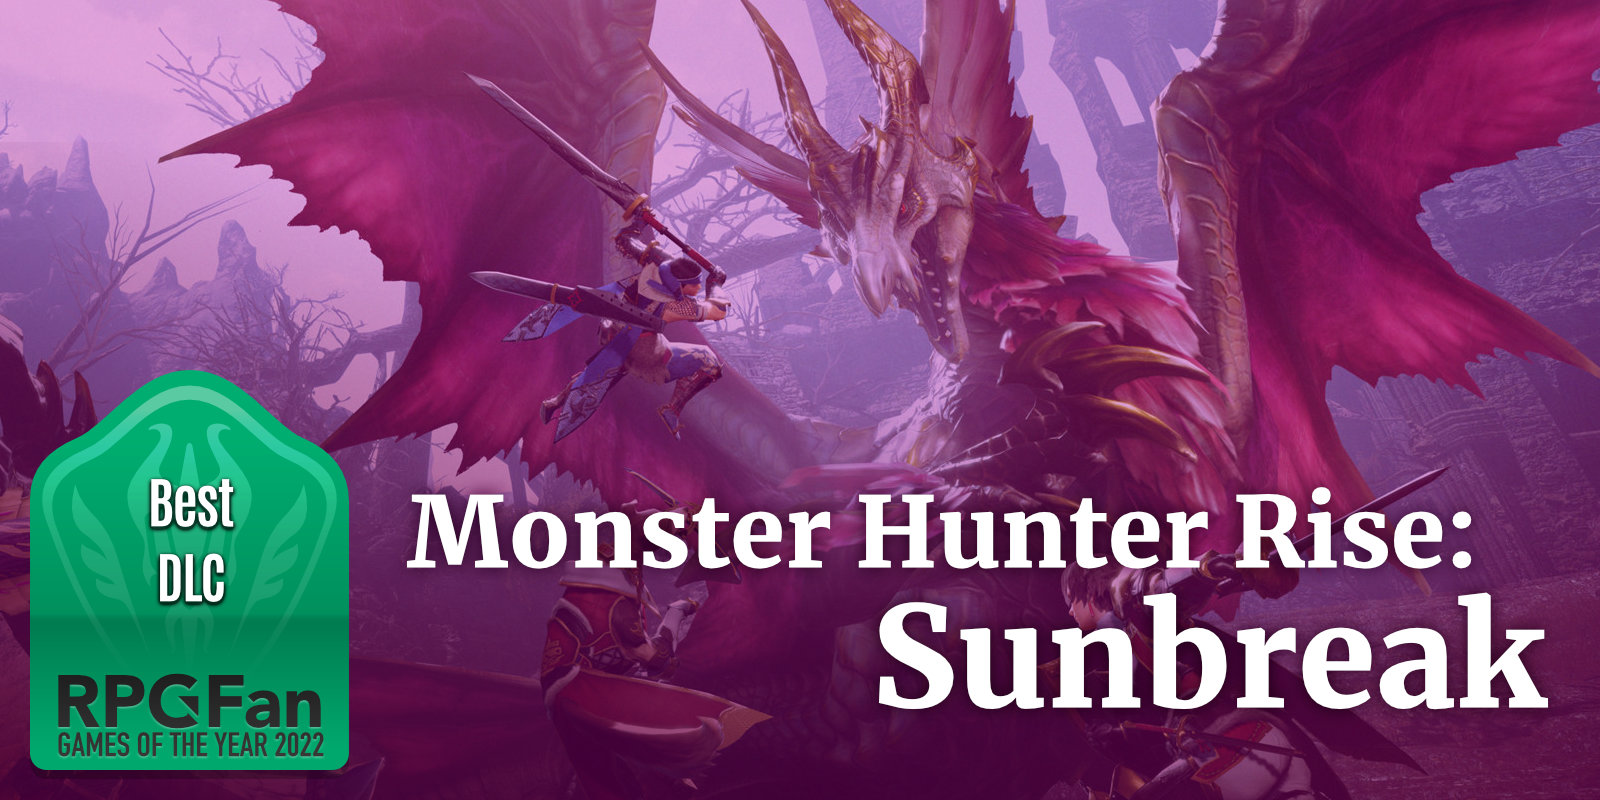 GOTY 2022 Best DLC Monster Hunter Rise Sunbreak